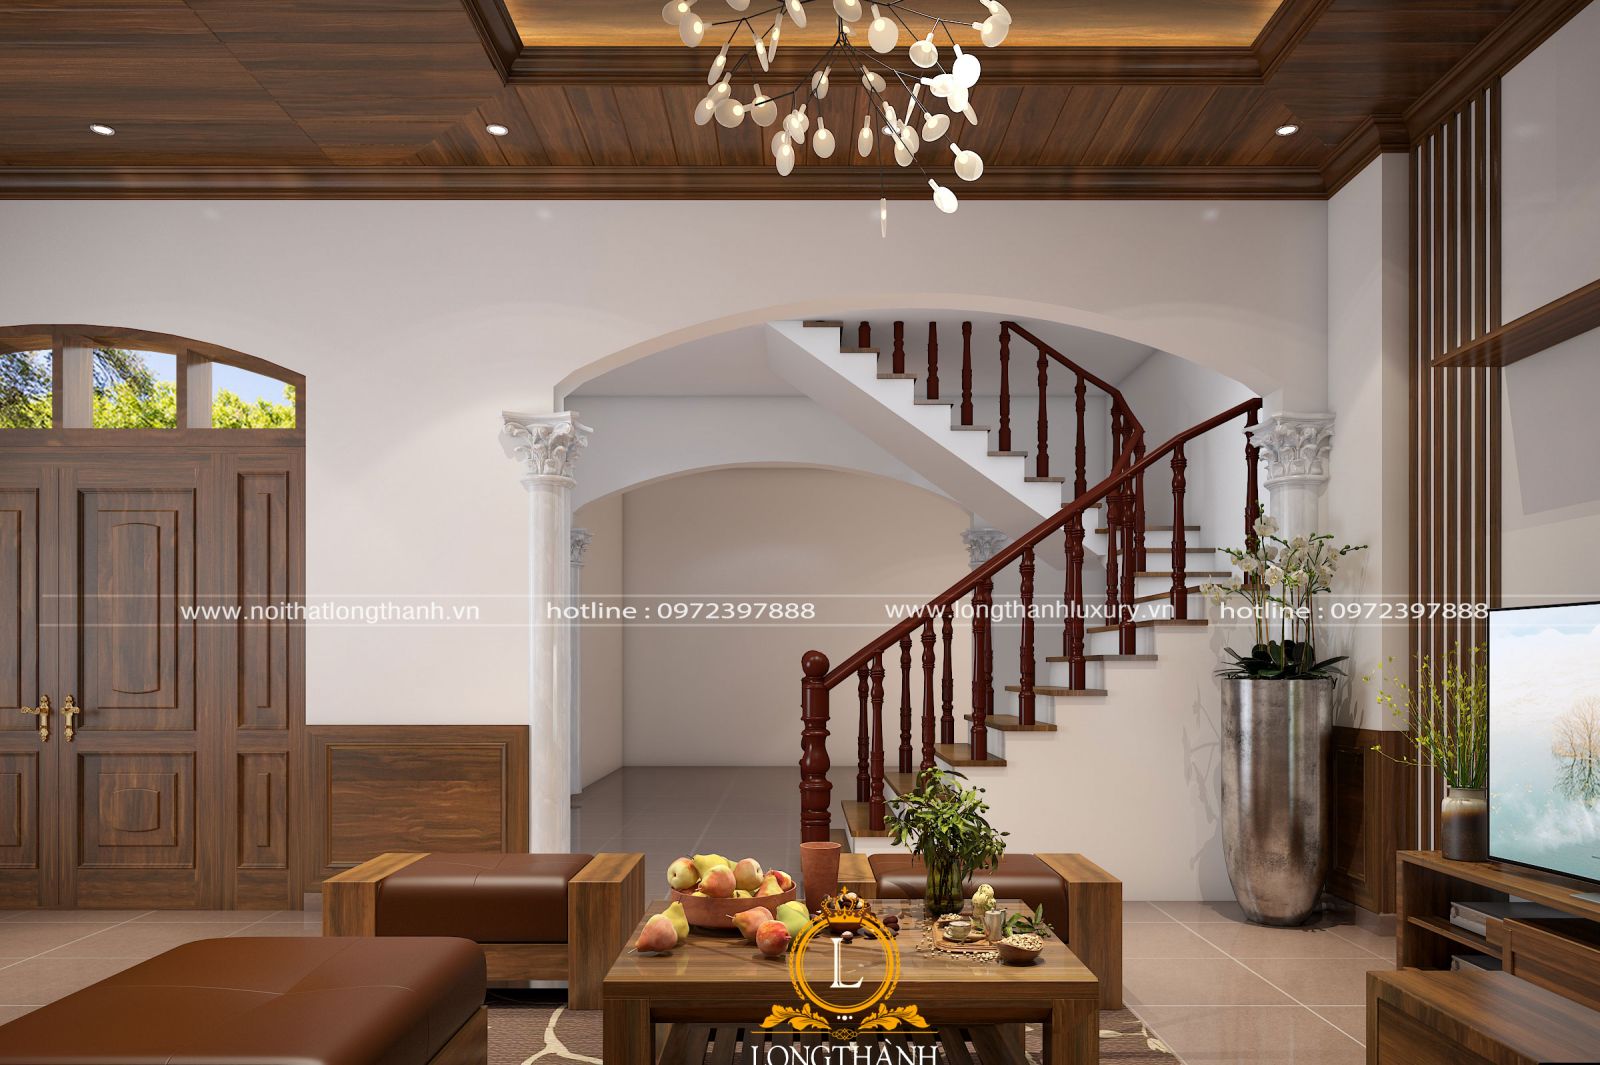 Phòng khách hiện đại đẹp được thiết kế kết hợp cùng hệ cầu thang 